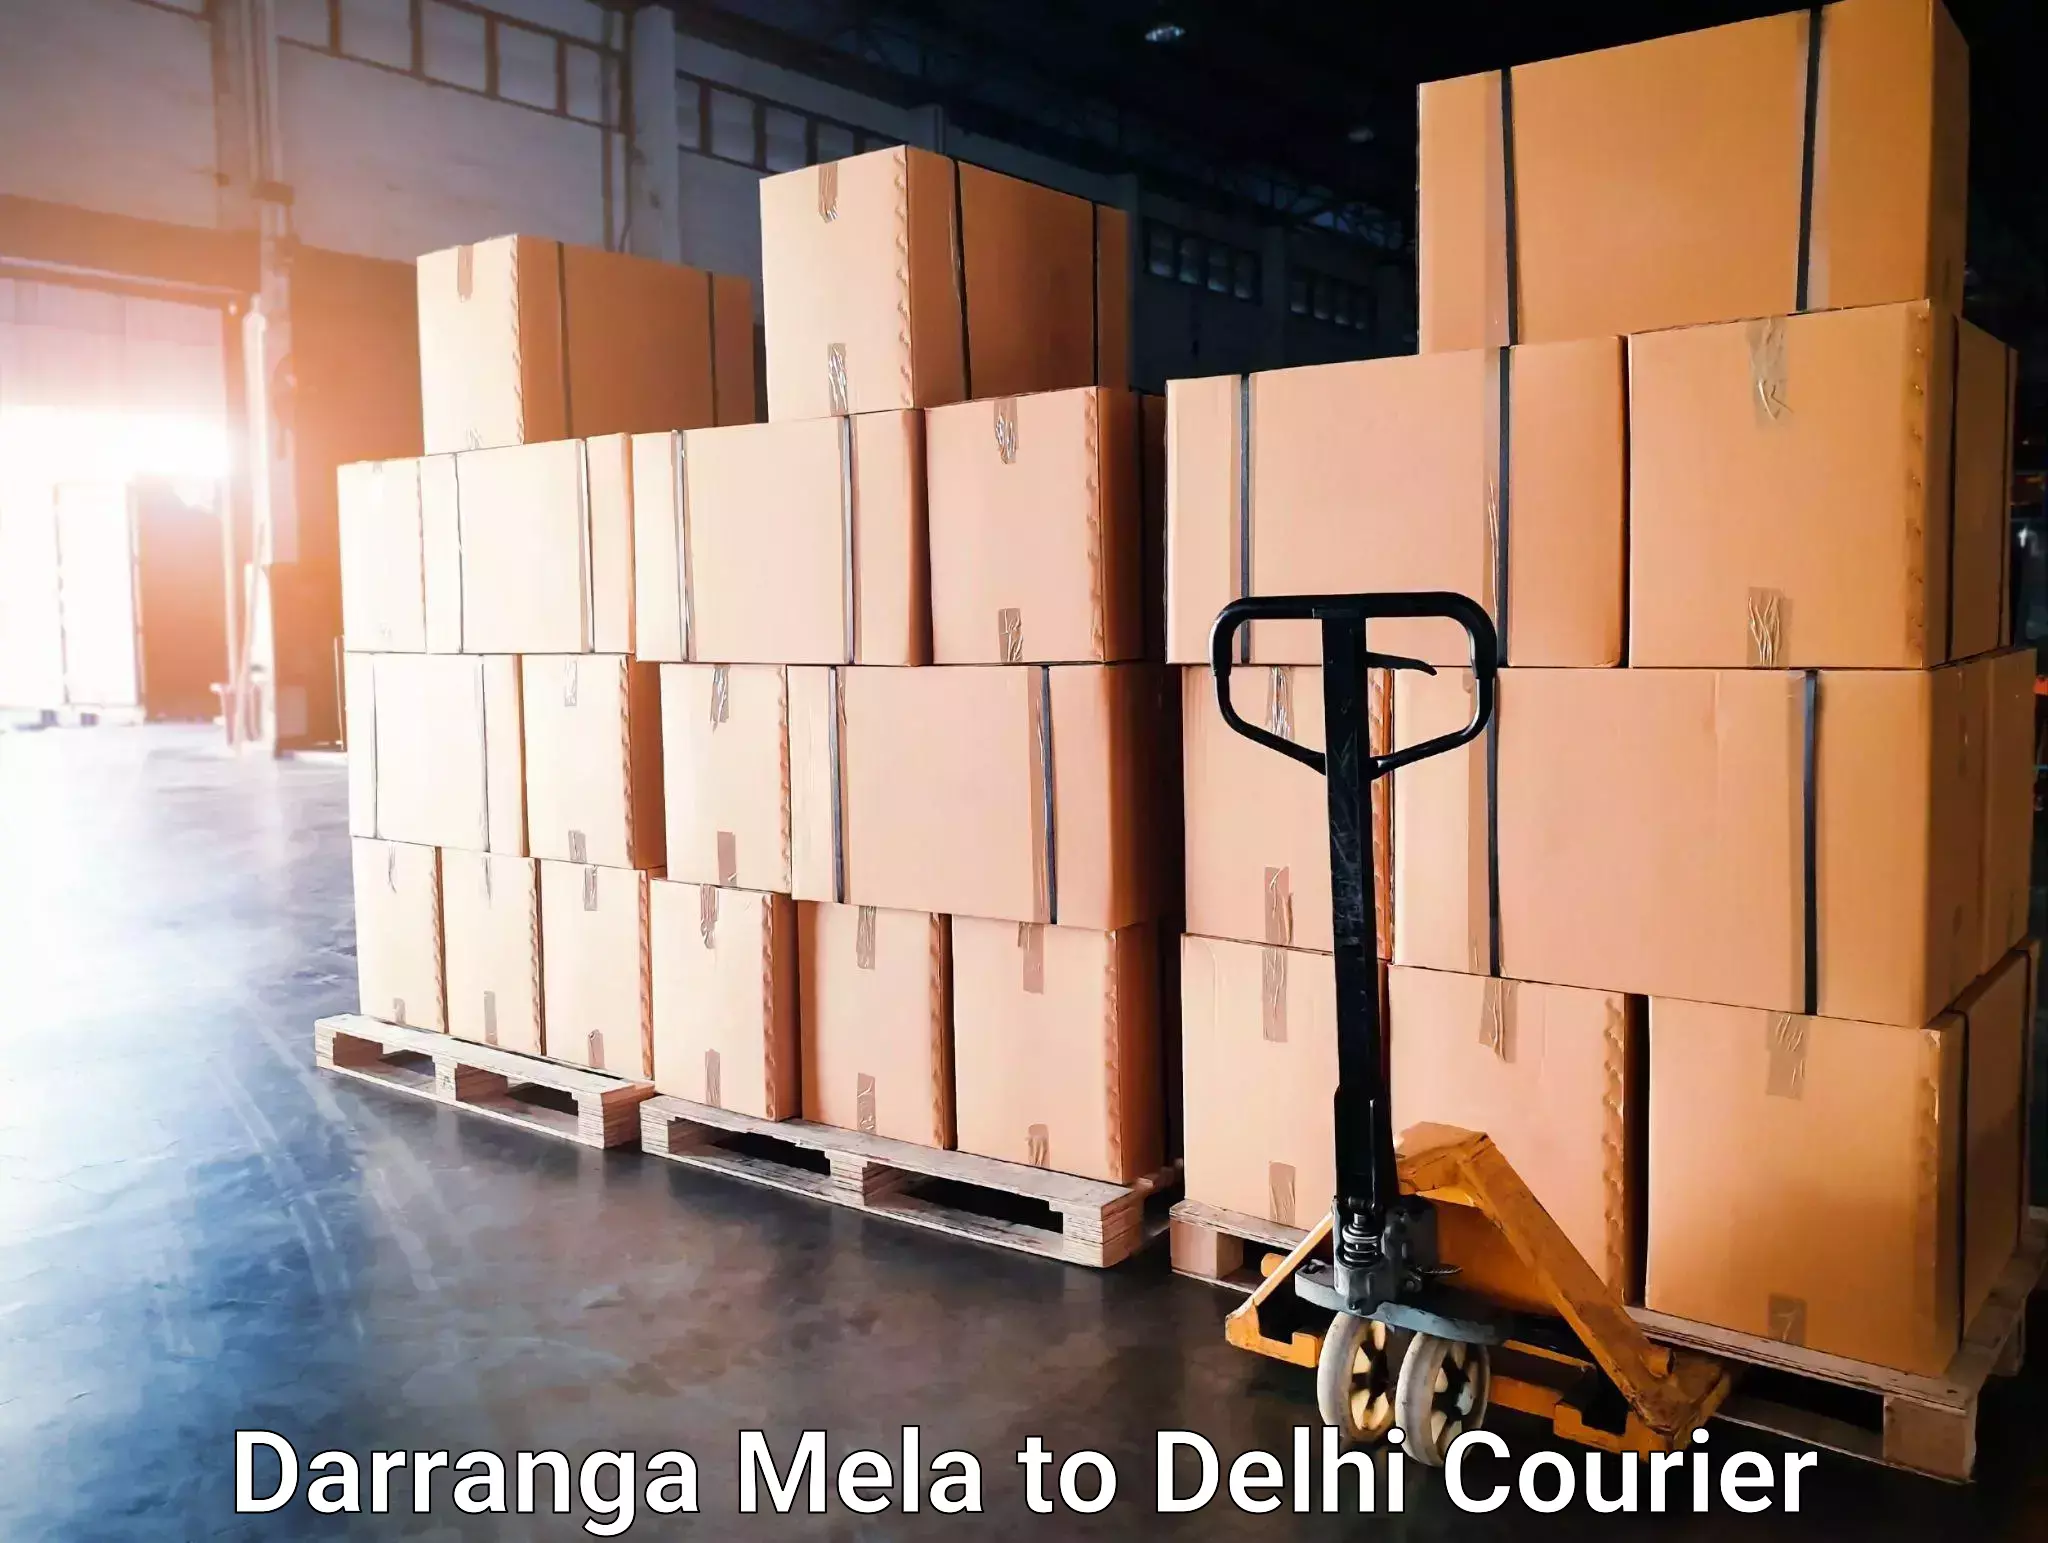 High-capacity courier solutions Darranga Mela to Delhi